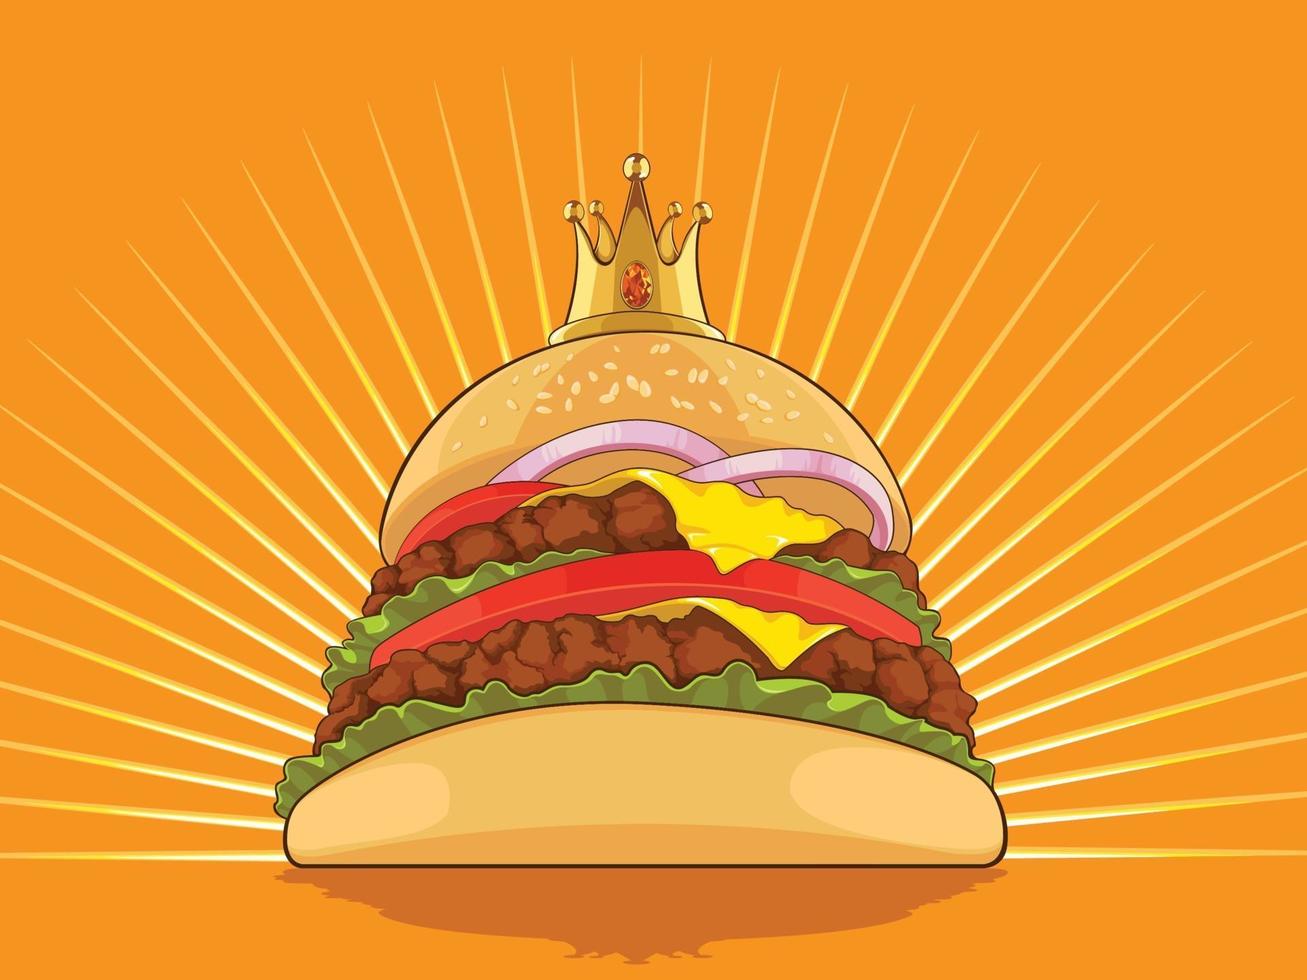 King Hamburger Cartoon Burger Patty Drawing Vector Illustration